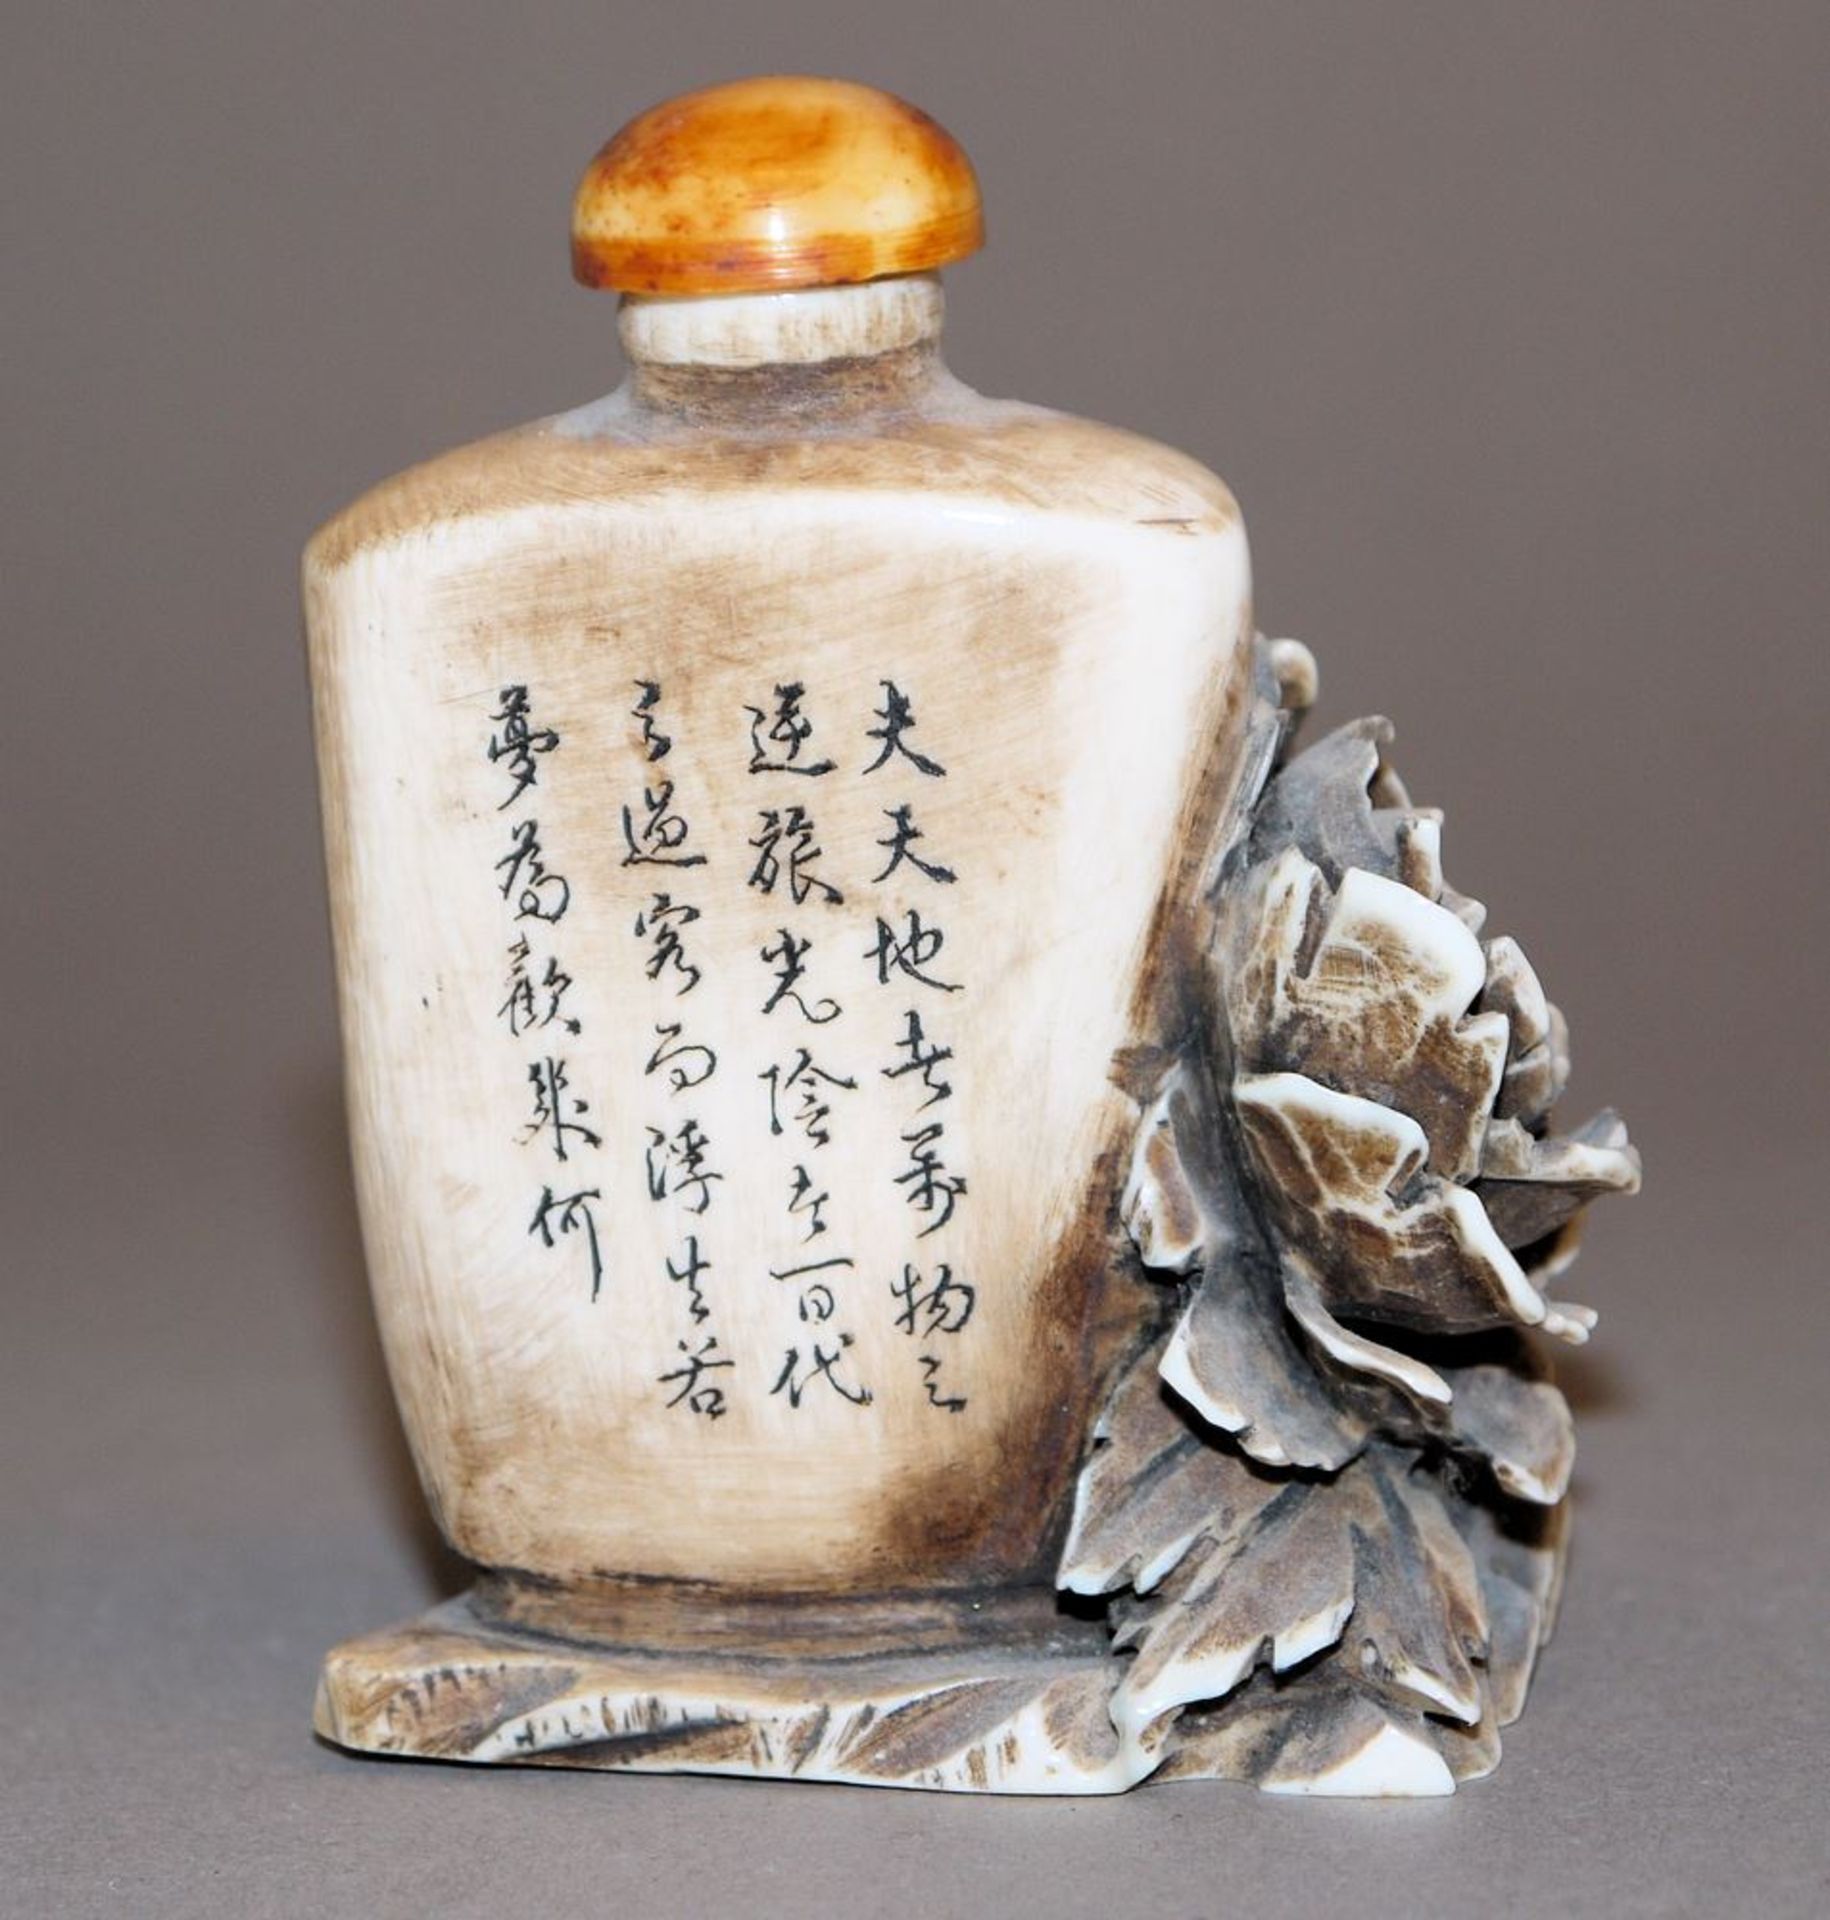 Chinesische Elfenbein-Snuffbottle mit Blüten und Gedicht - Image 2 of 2